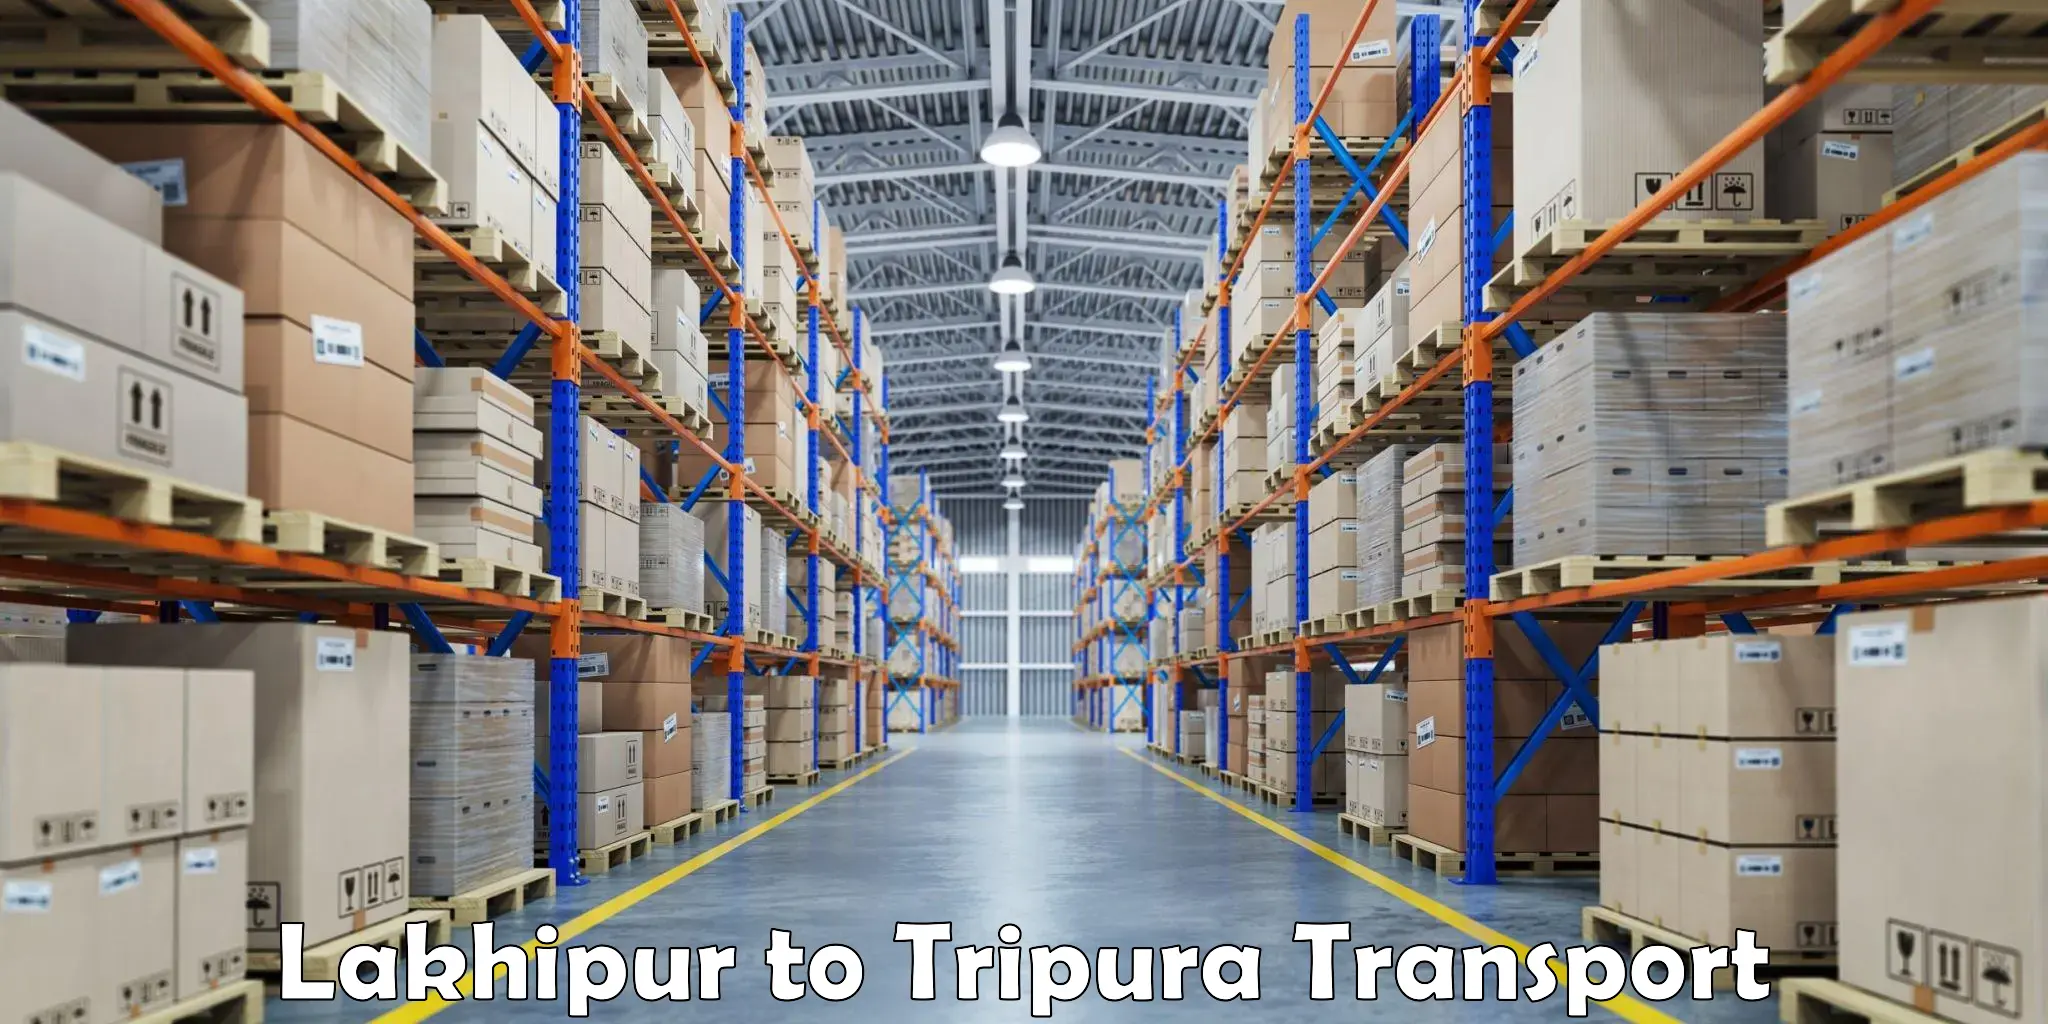 Furniture transport service Lakhipur to Aambasa